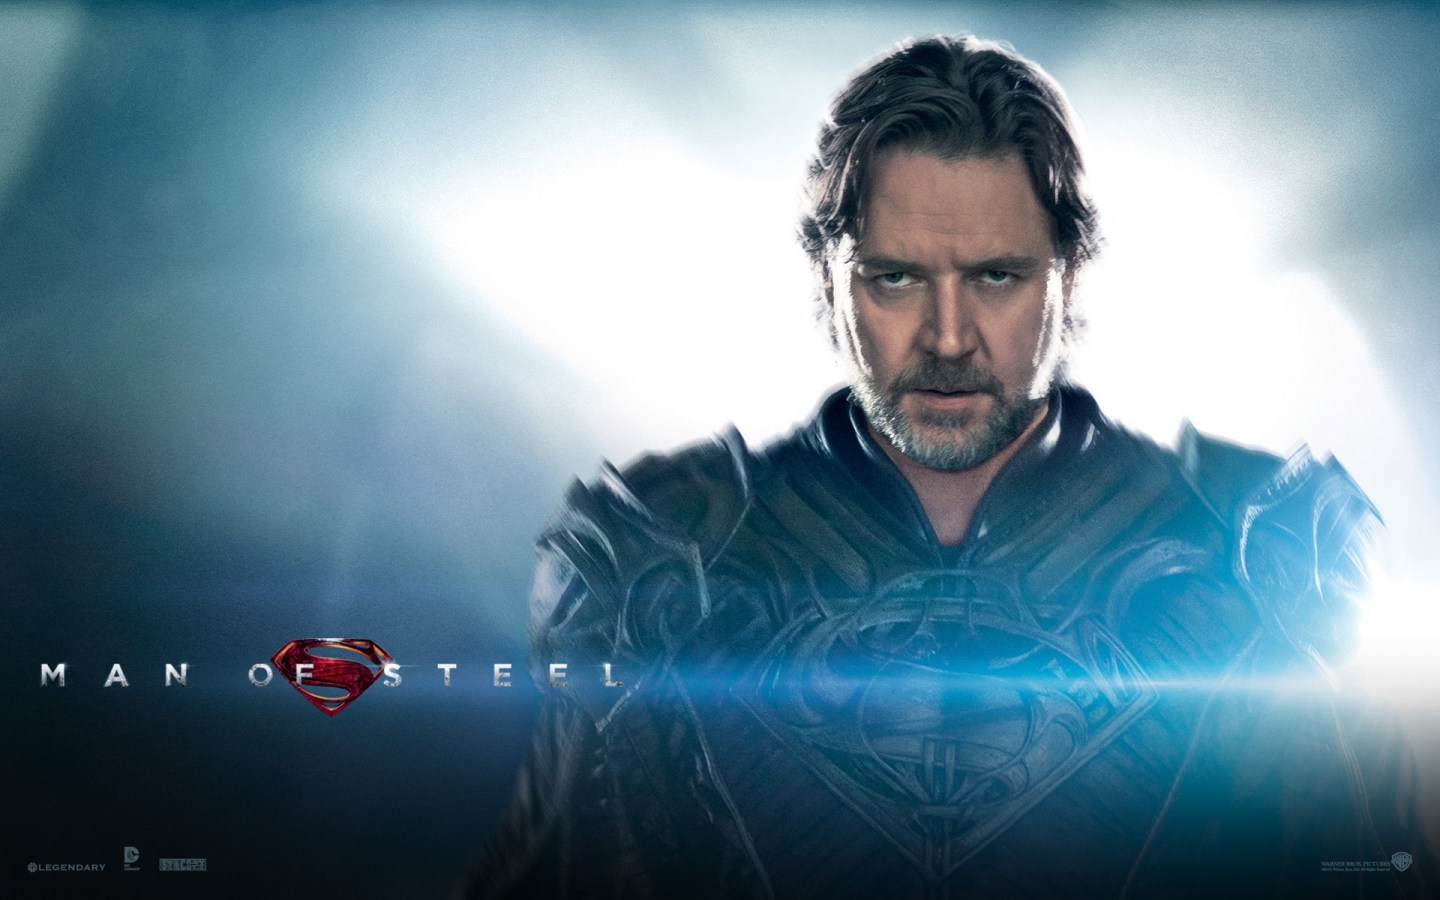 Jor-El Man of Steel for 1440 x 900 widescreen resolution